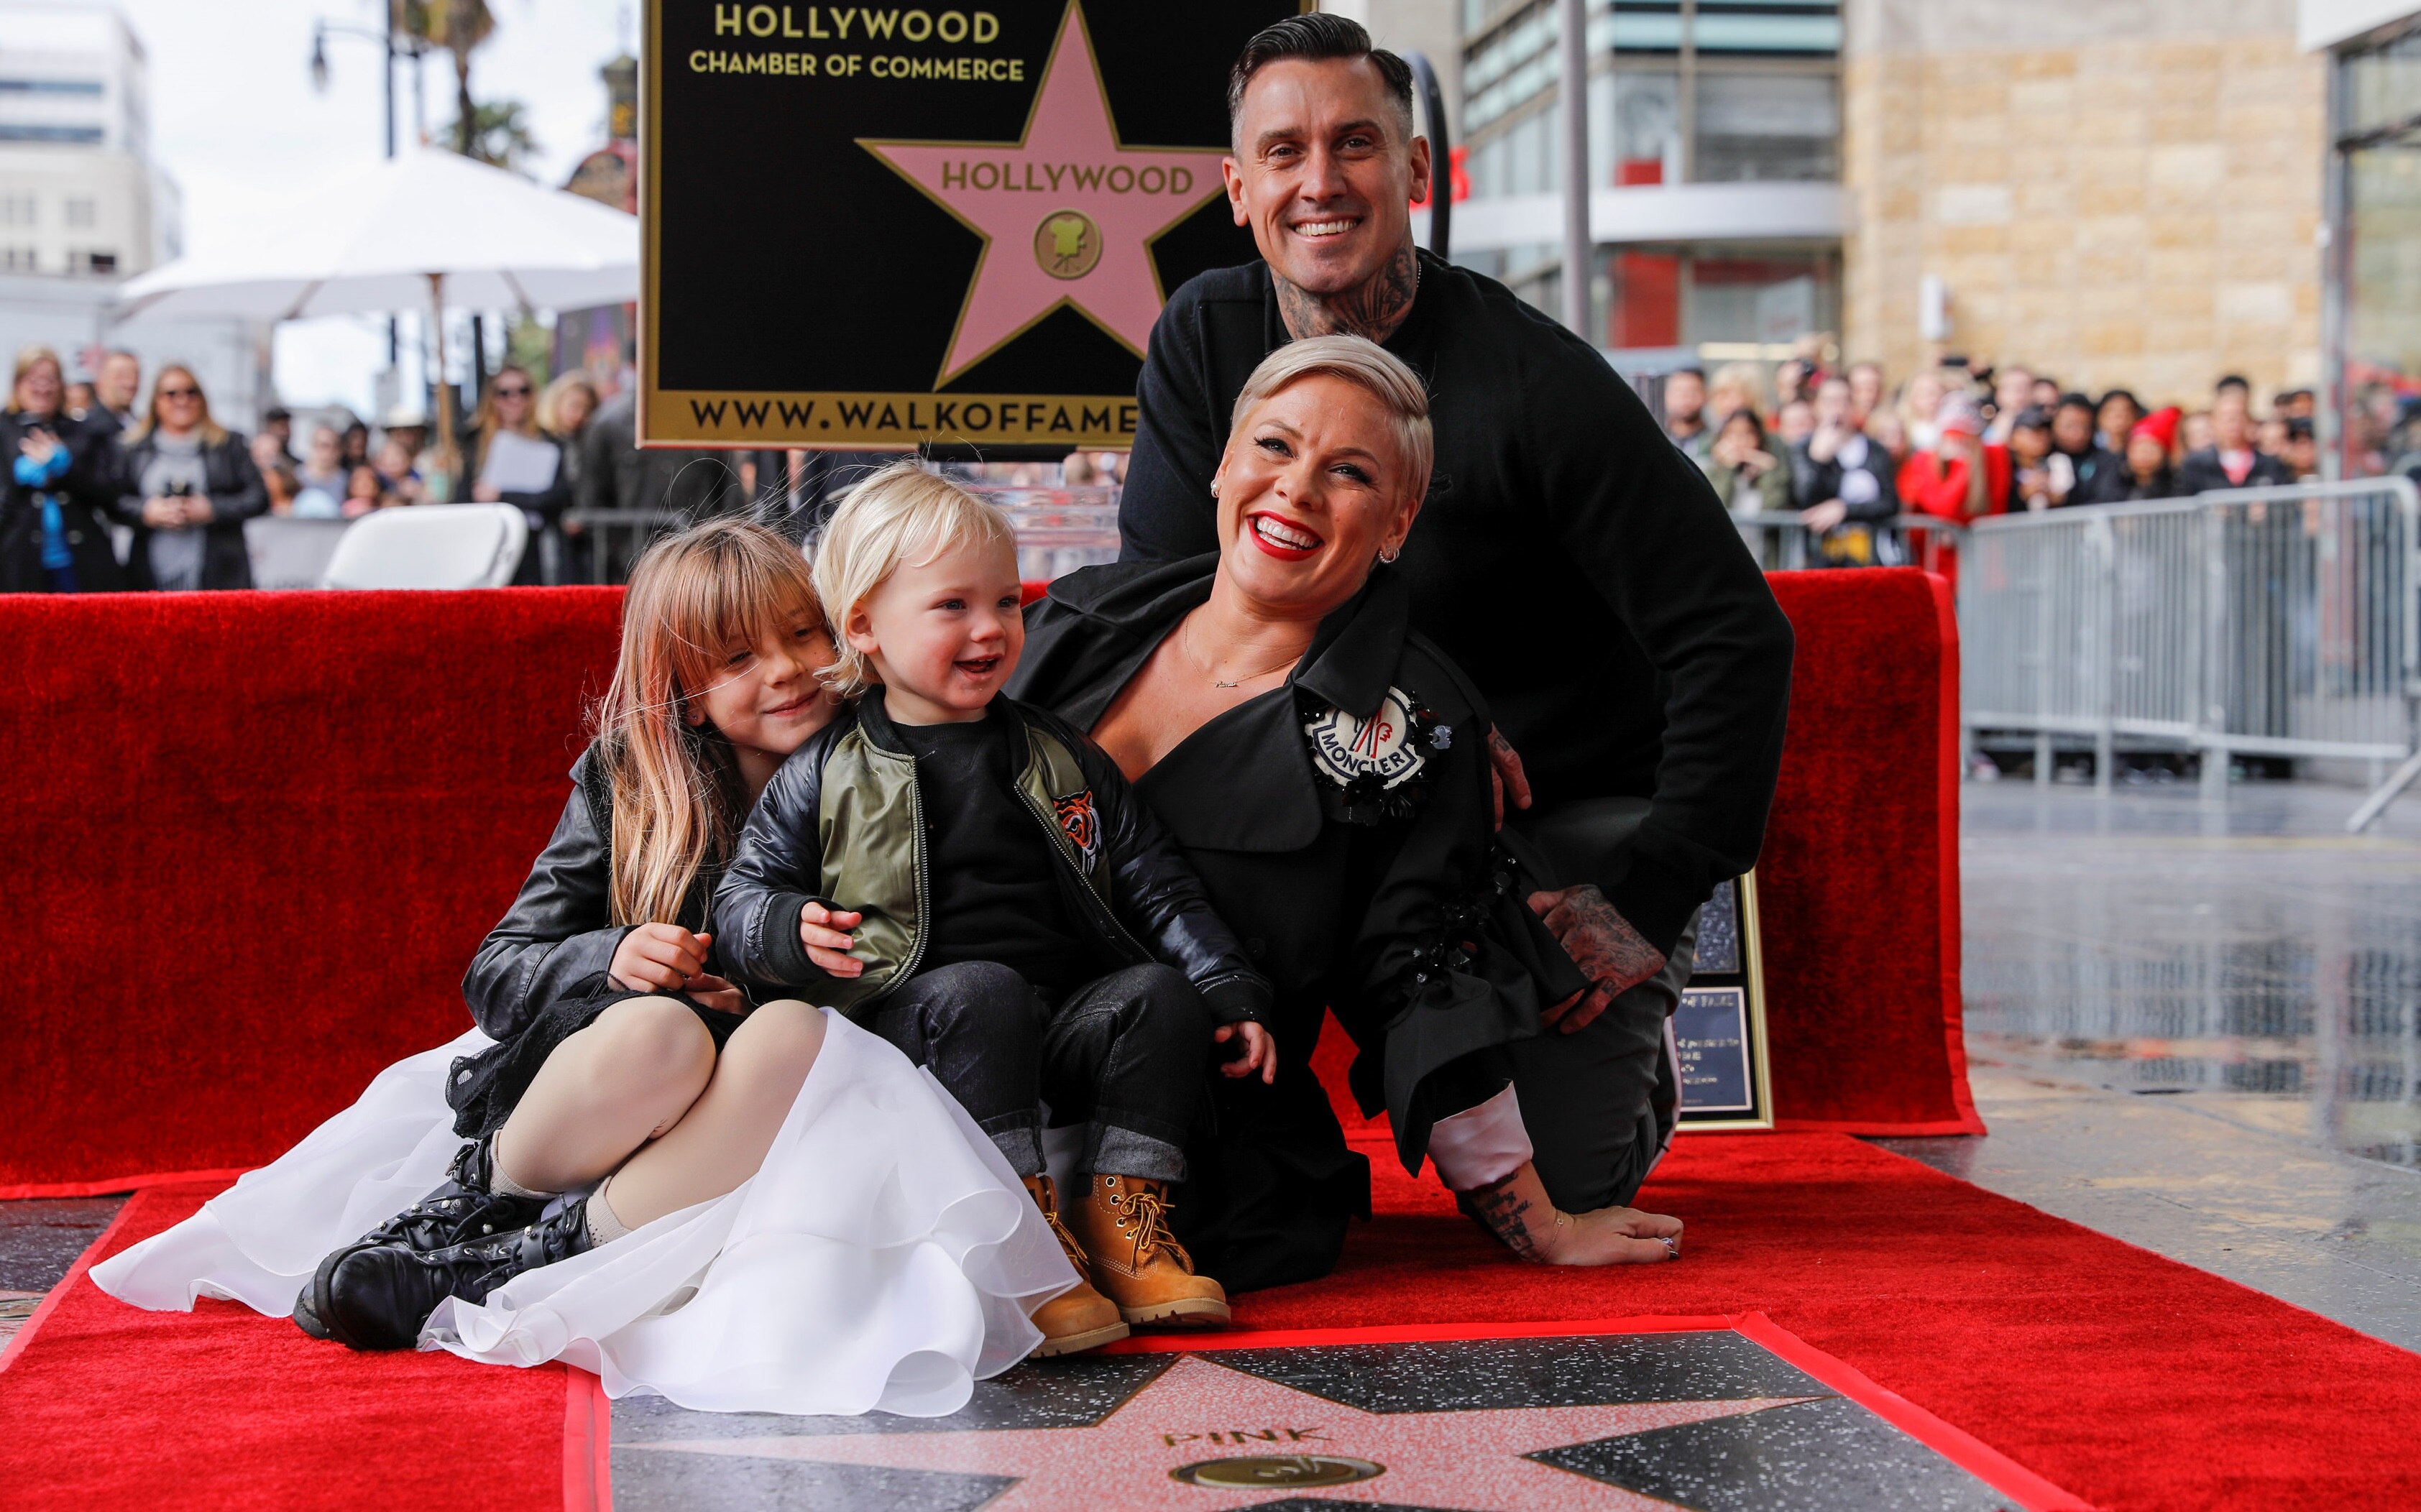 Pink leva a família para receber estrela na Calçada da Fama; veja